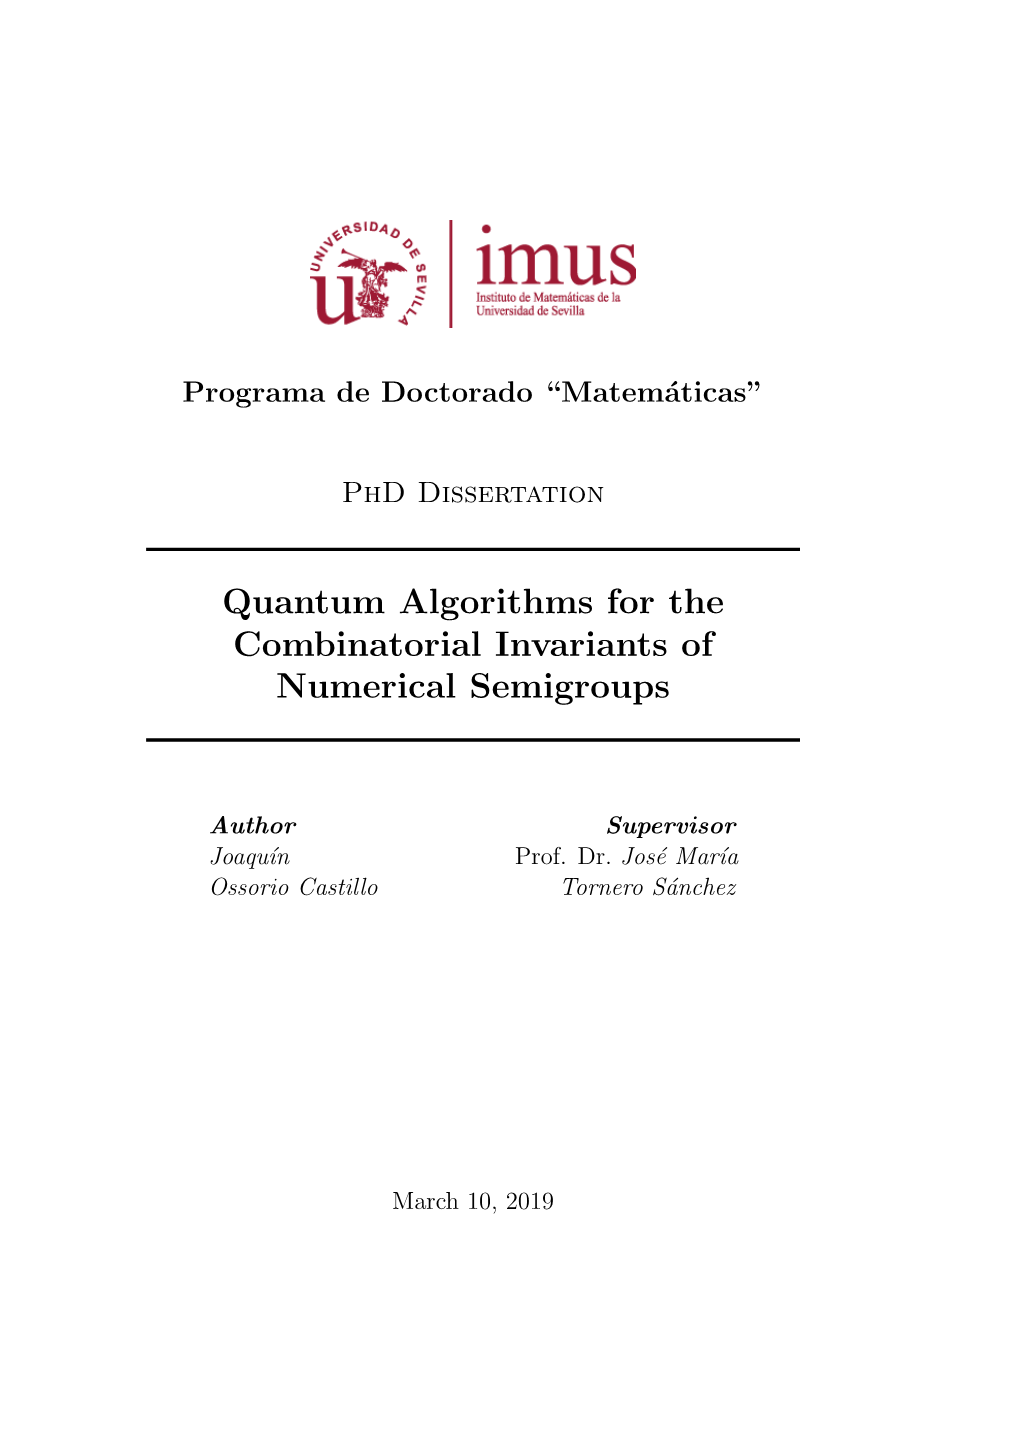 Quantum Algorithms for the Combinatorial Invariants of Numerical Semigroups